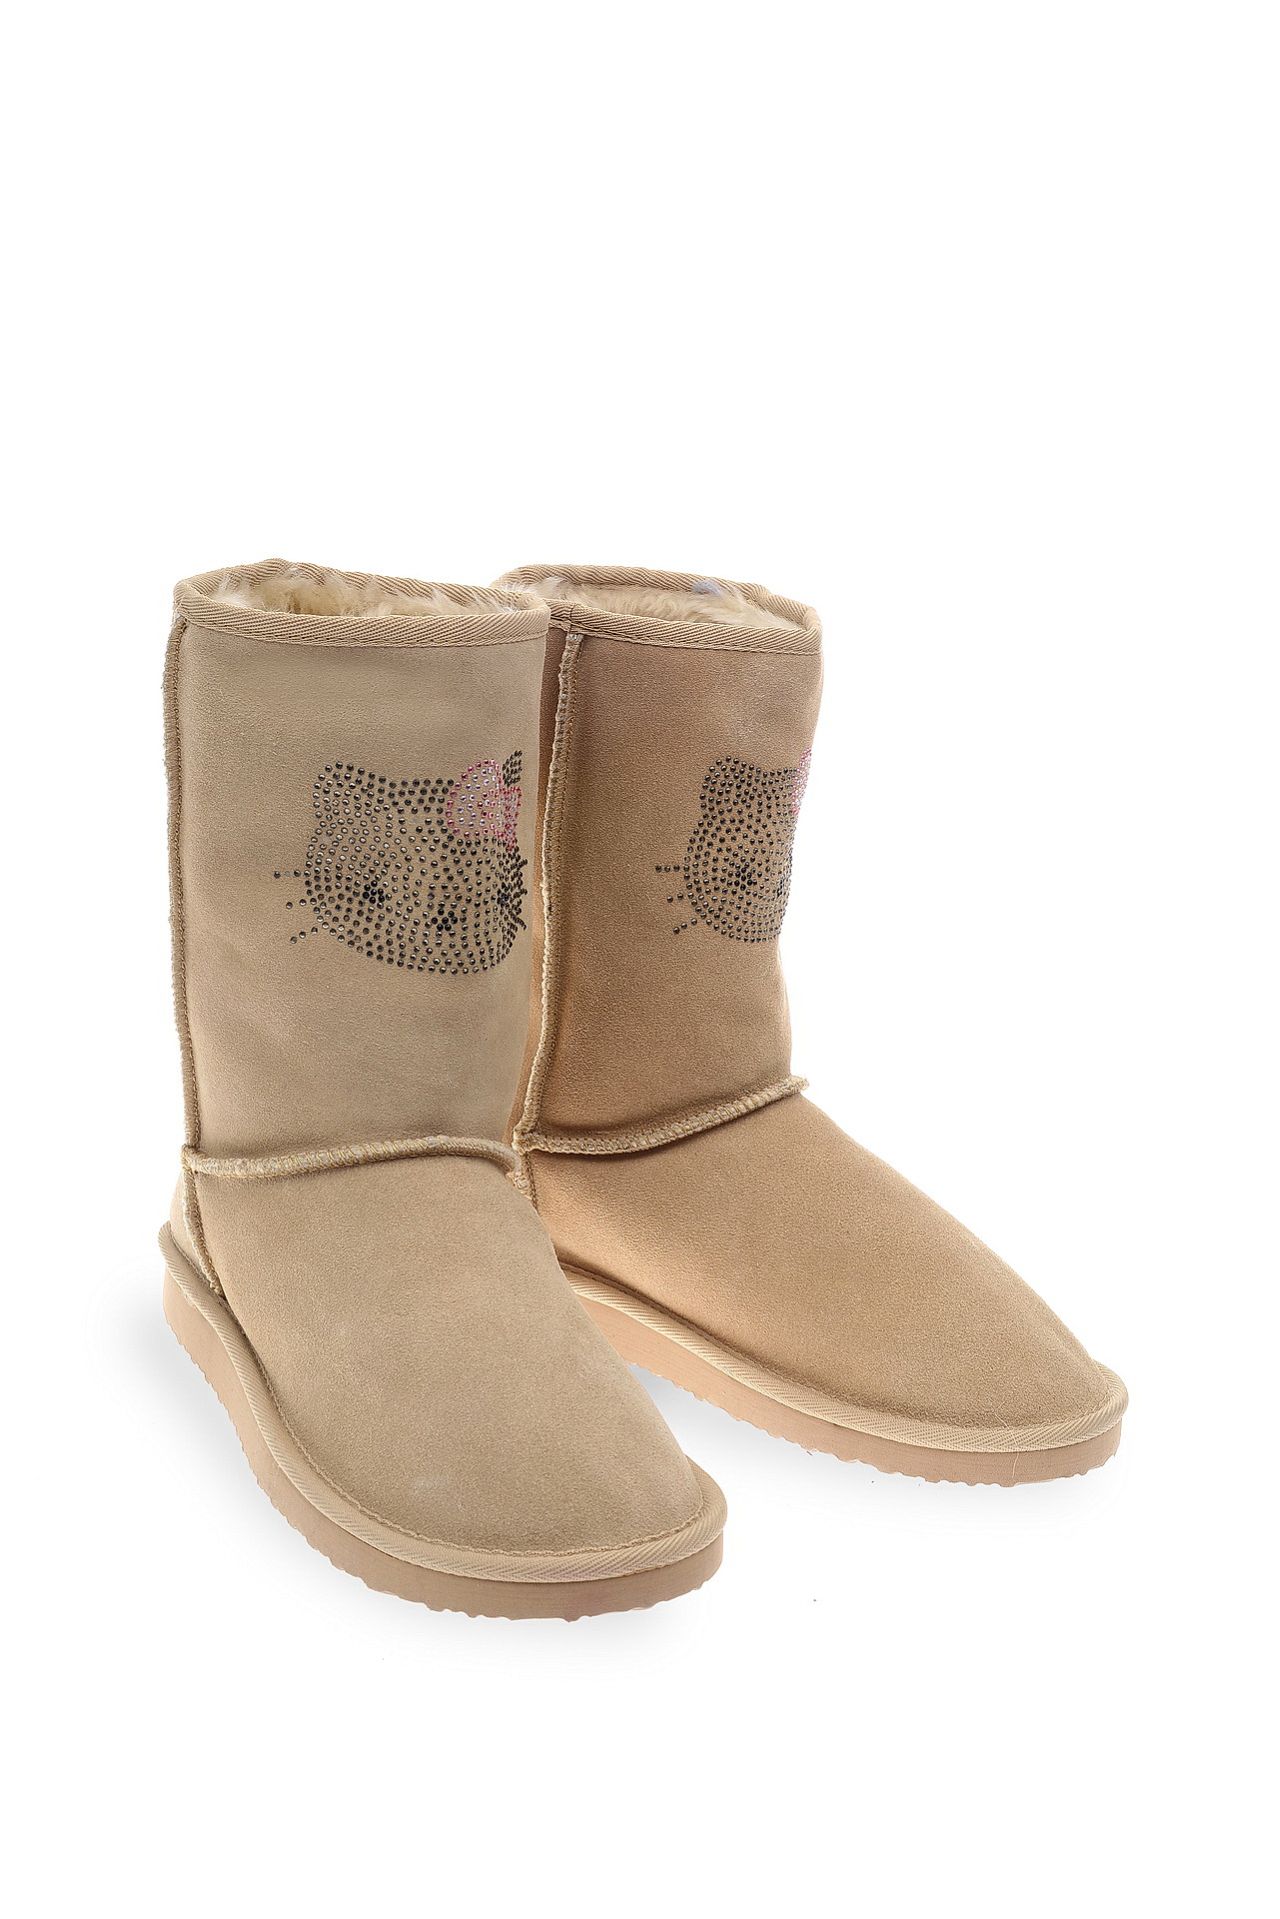 Обувь женская Сапоги VICTORIA COUTURE (WW02U1/11.1). Купить за 8250 руб.